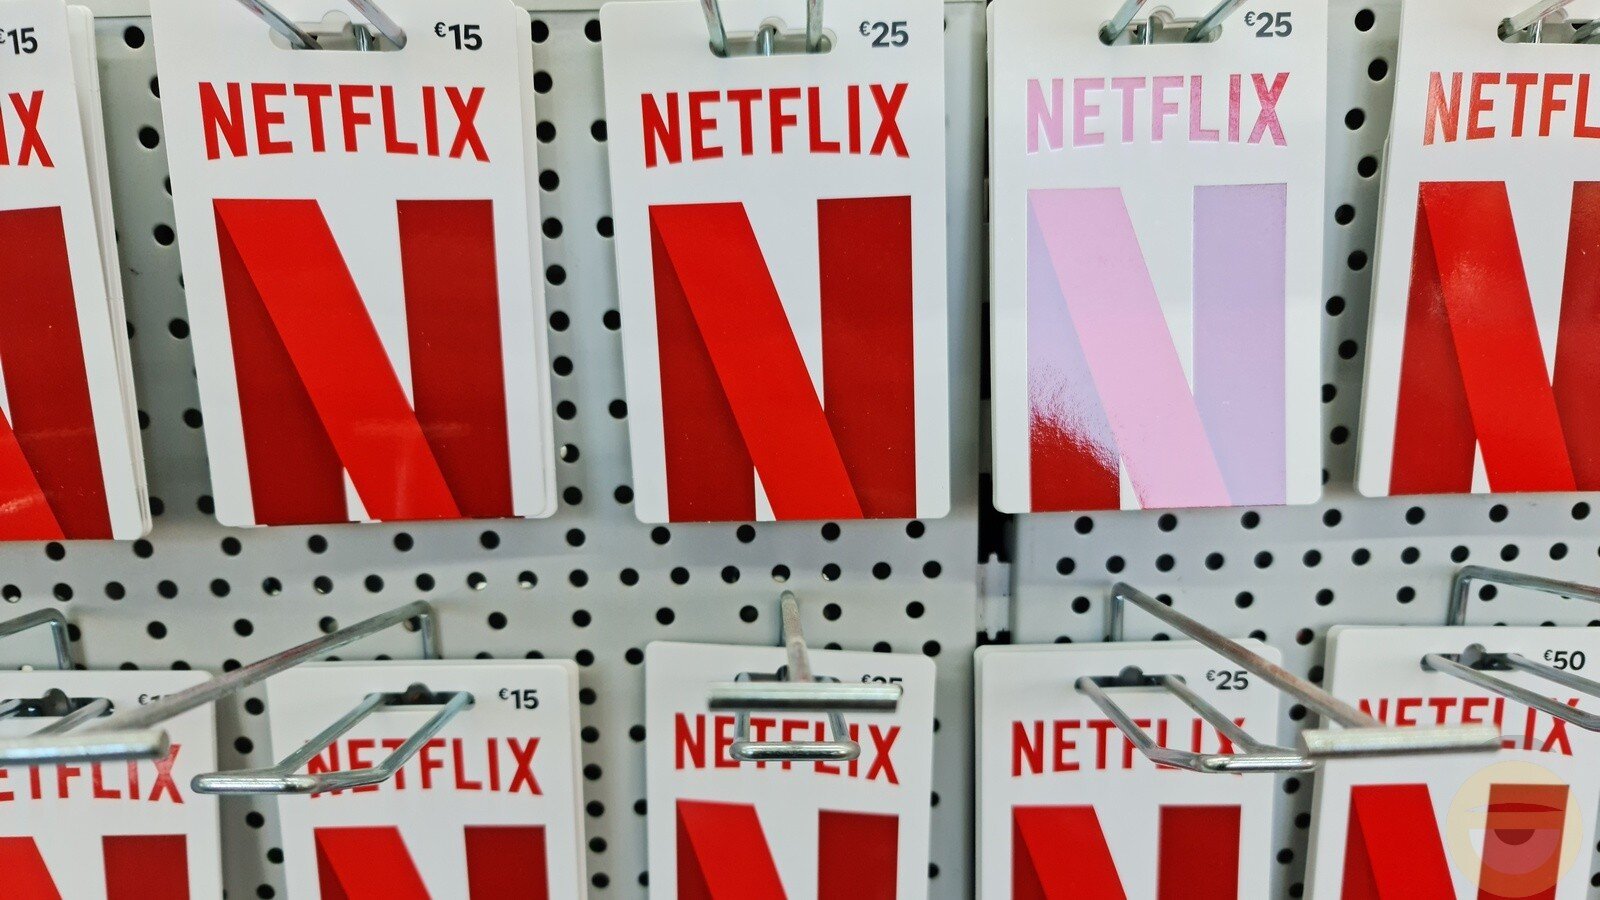 Οι δοκιμές του Netflix για την καταπολέμηση της κοινής χρήσης λογαριασμών, παρουσιάζουν σημαντικά προβλήματα